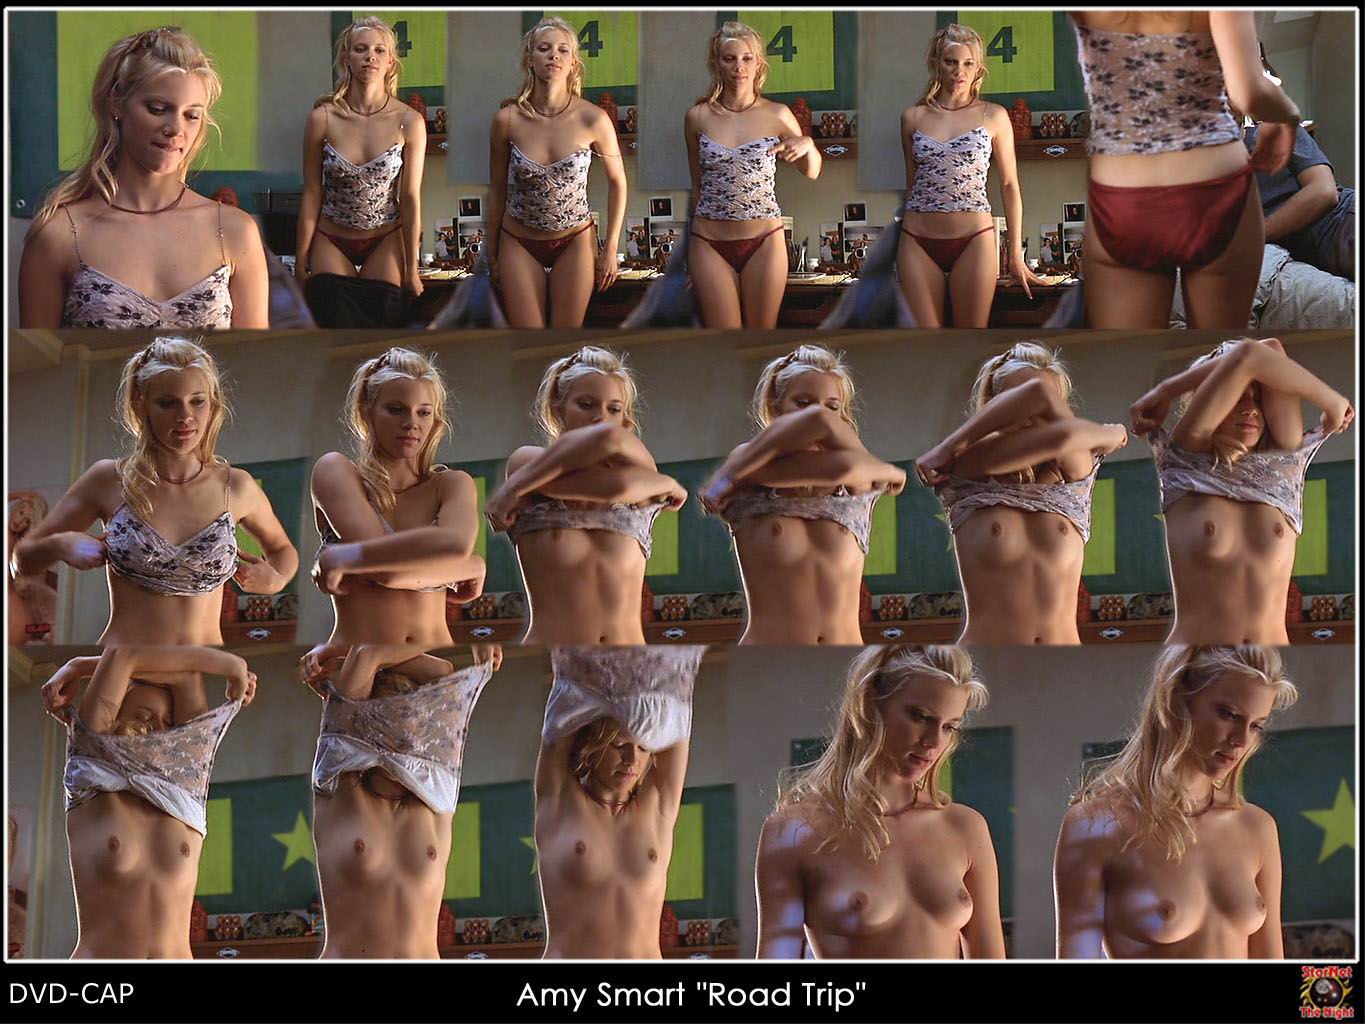 Amy smart mrskin - 🧡 Fotos de Amy Smart desnuda - Página 4 - Fotos de Famo...